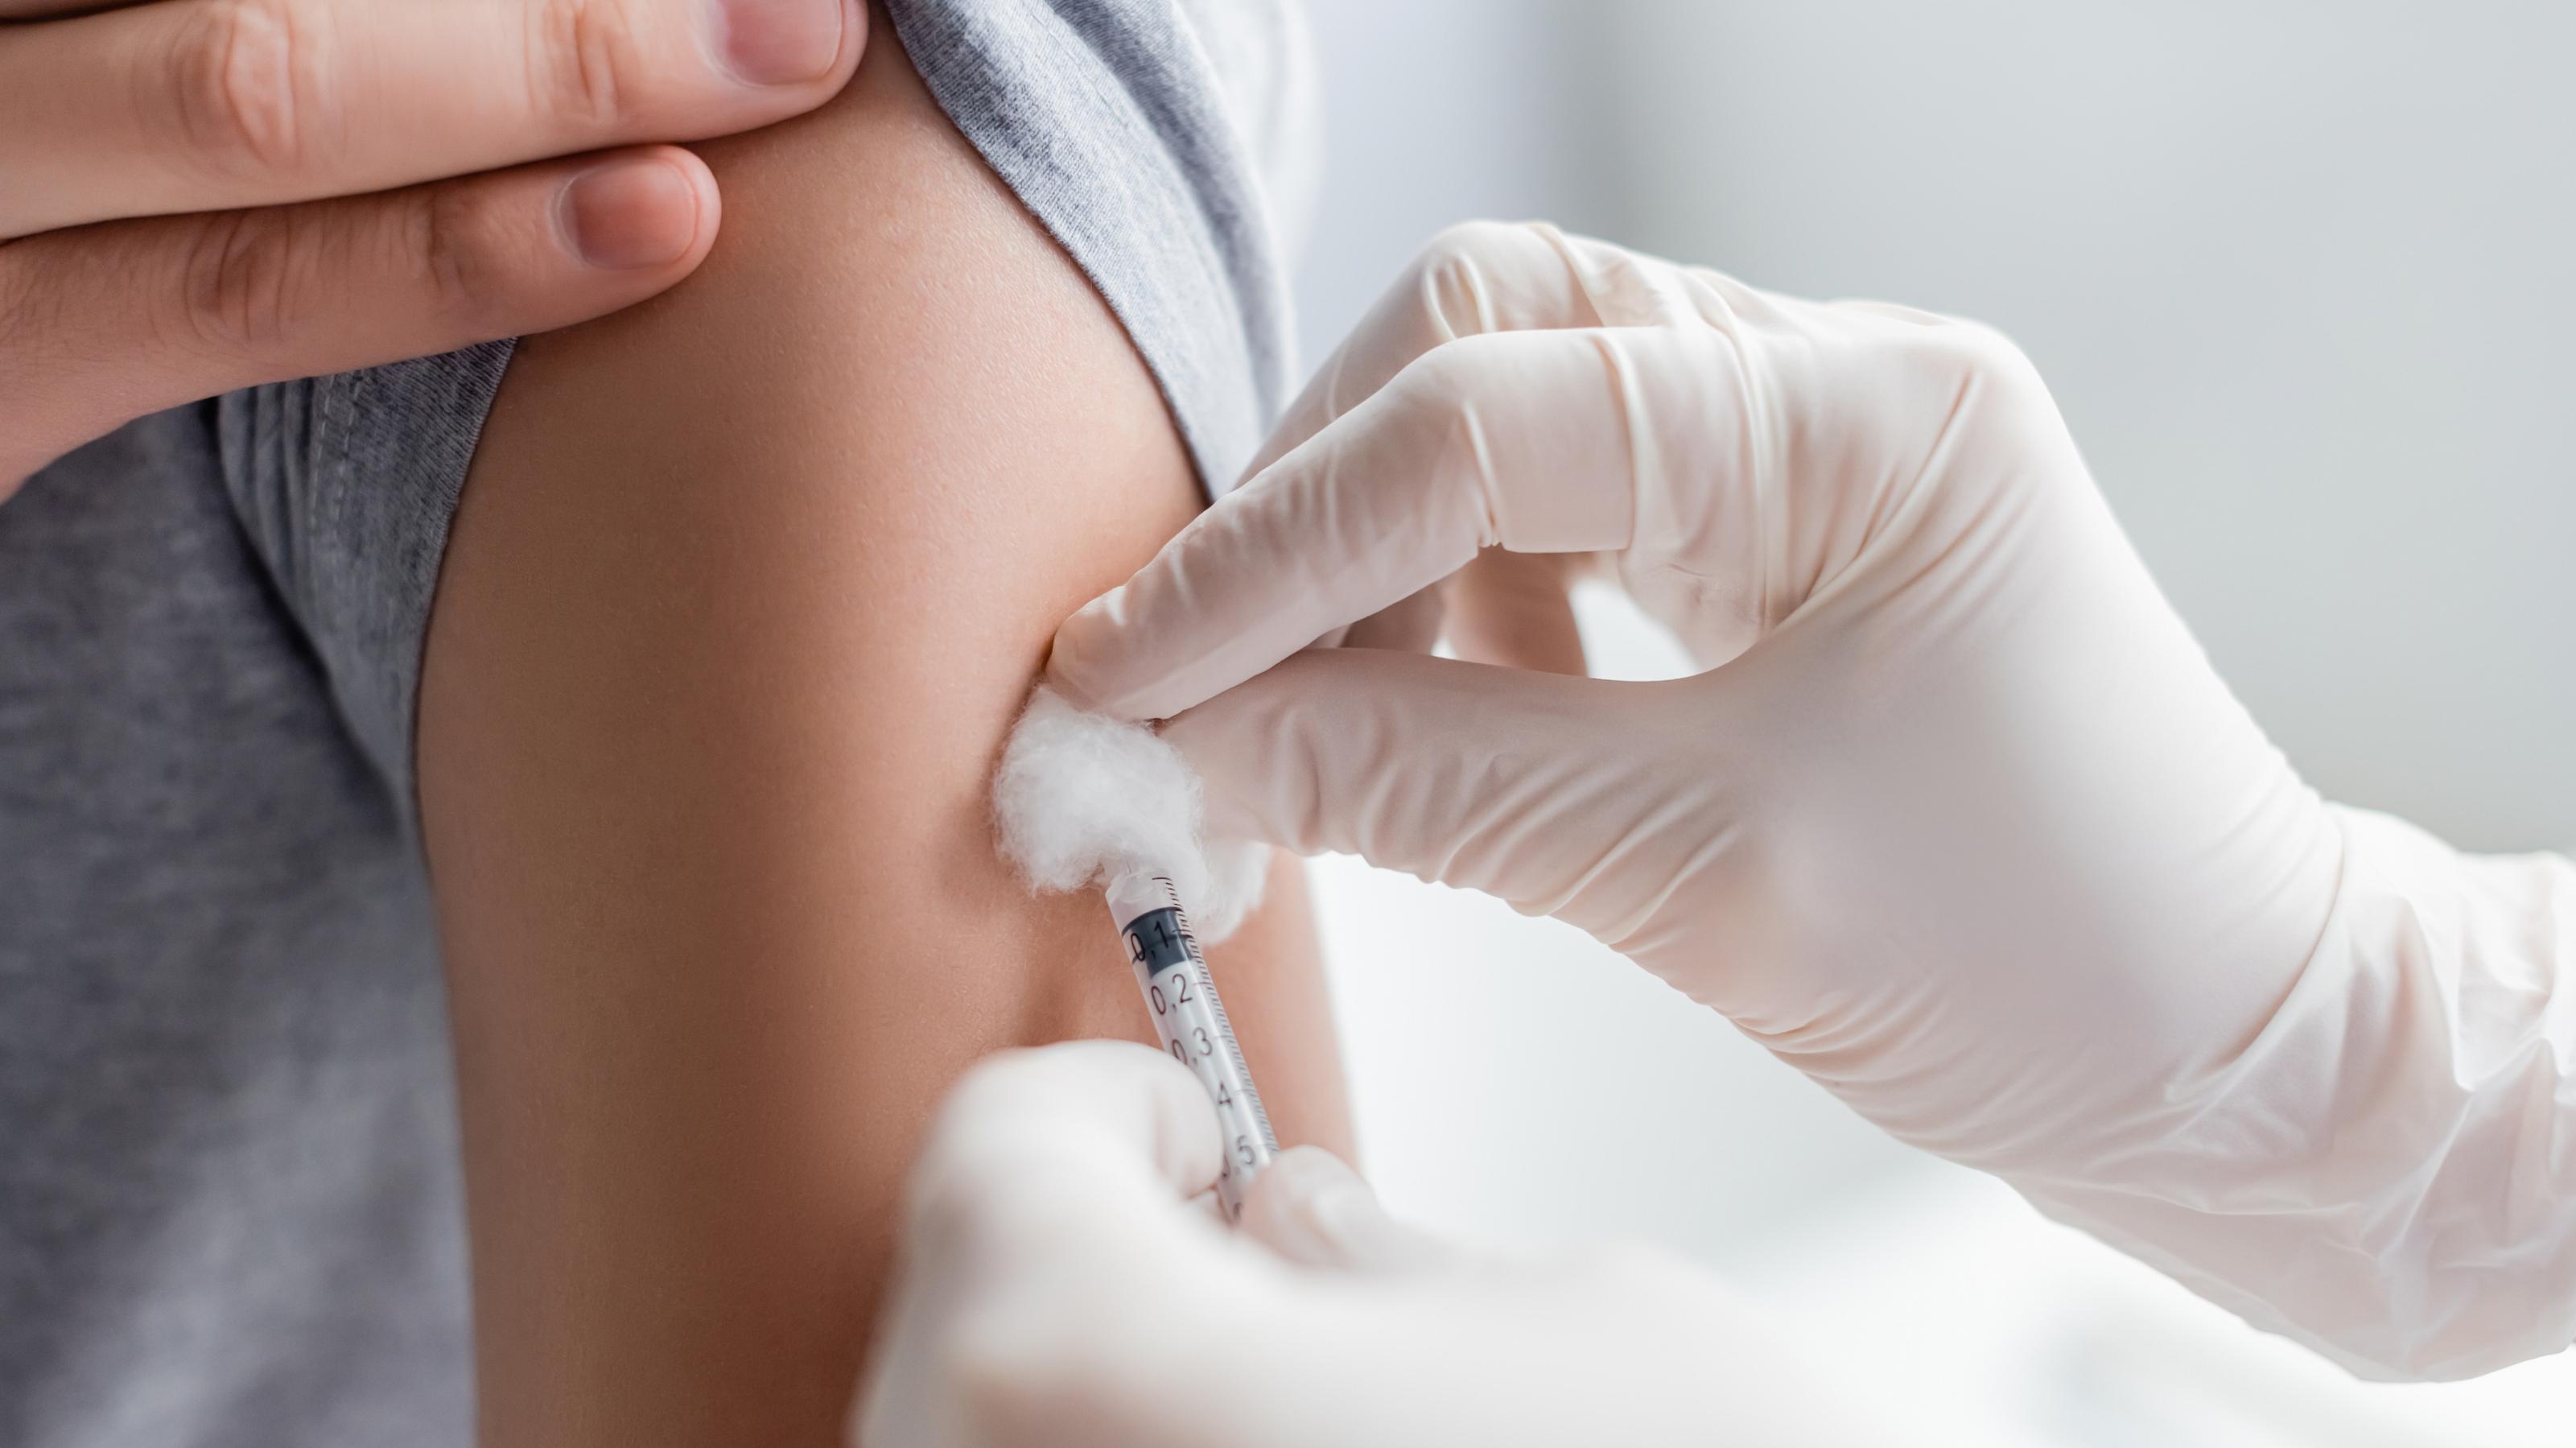 Das Bild zeigt den Oberarm eines jungen Menschen, in den gerade ein Impfstoff injiziert wird.